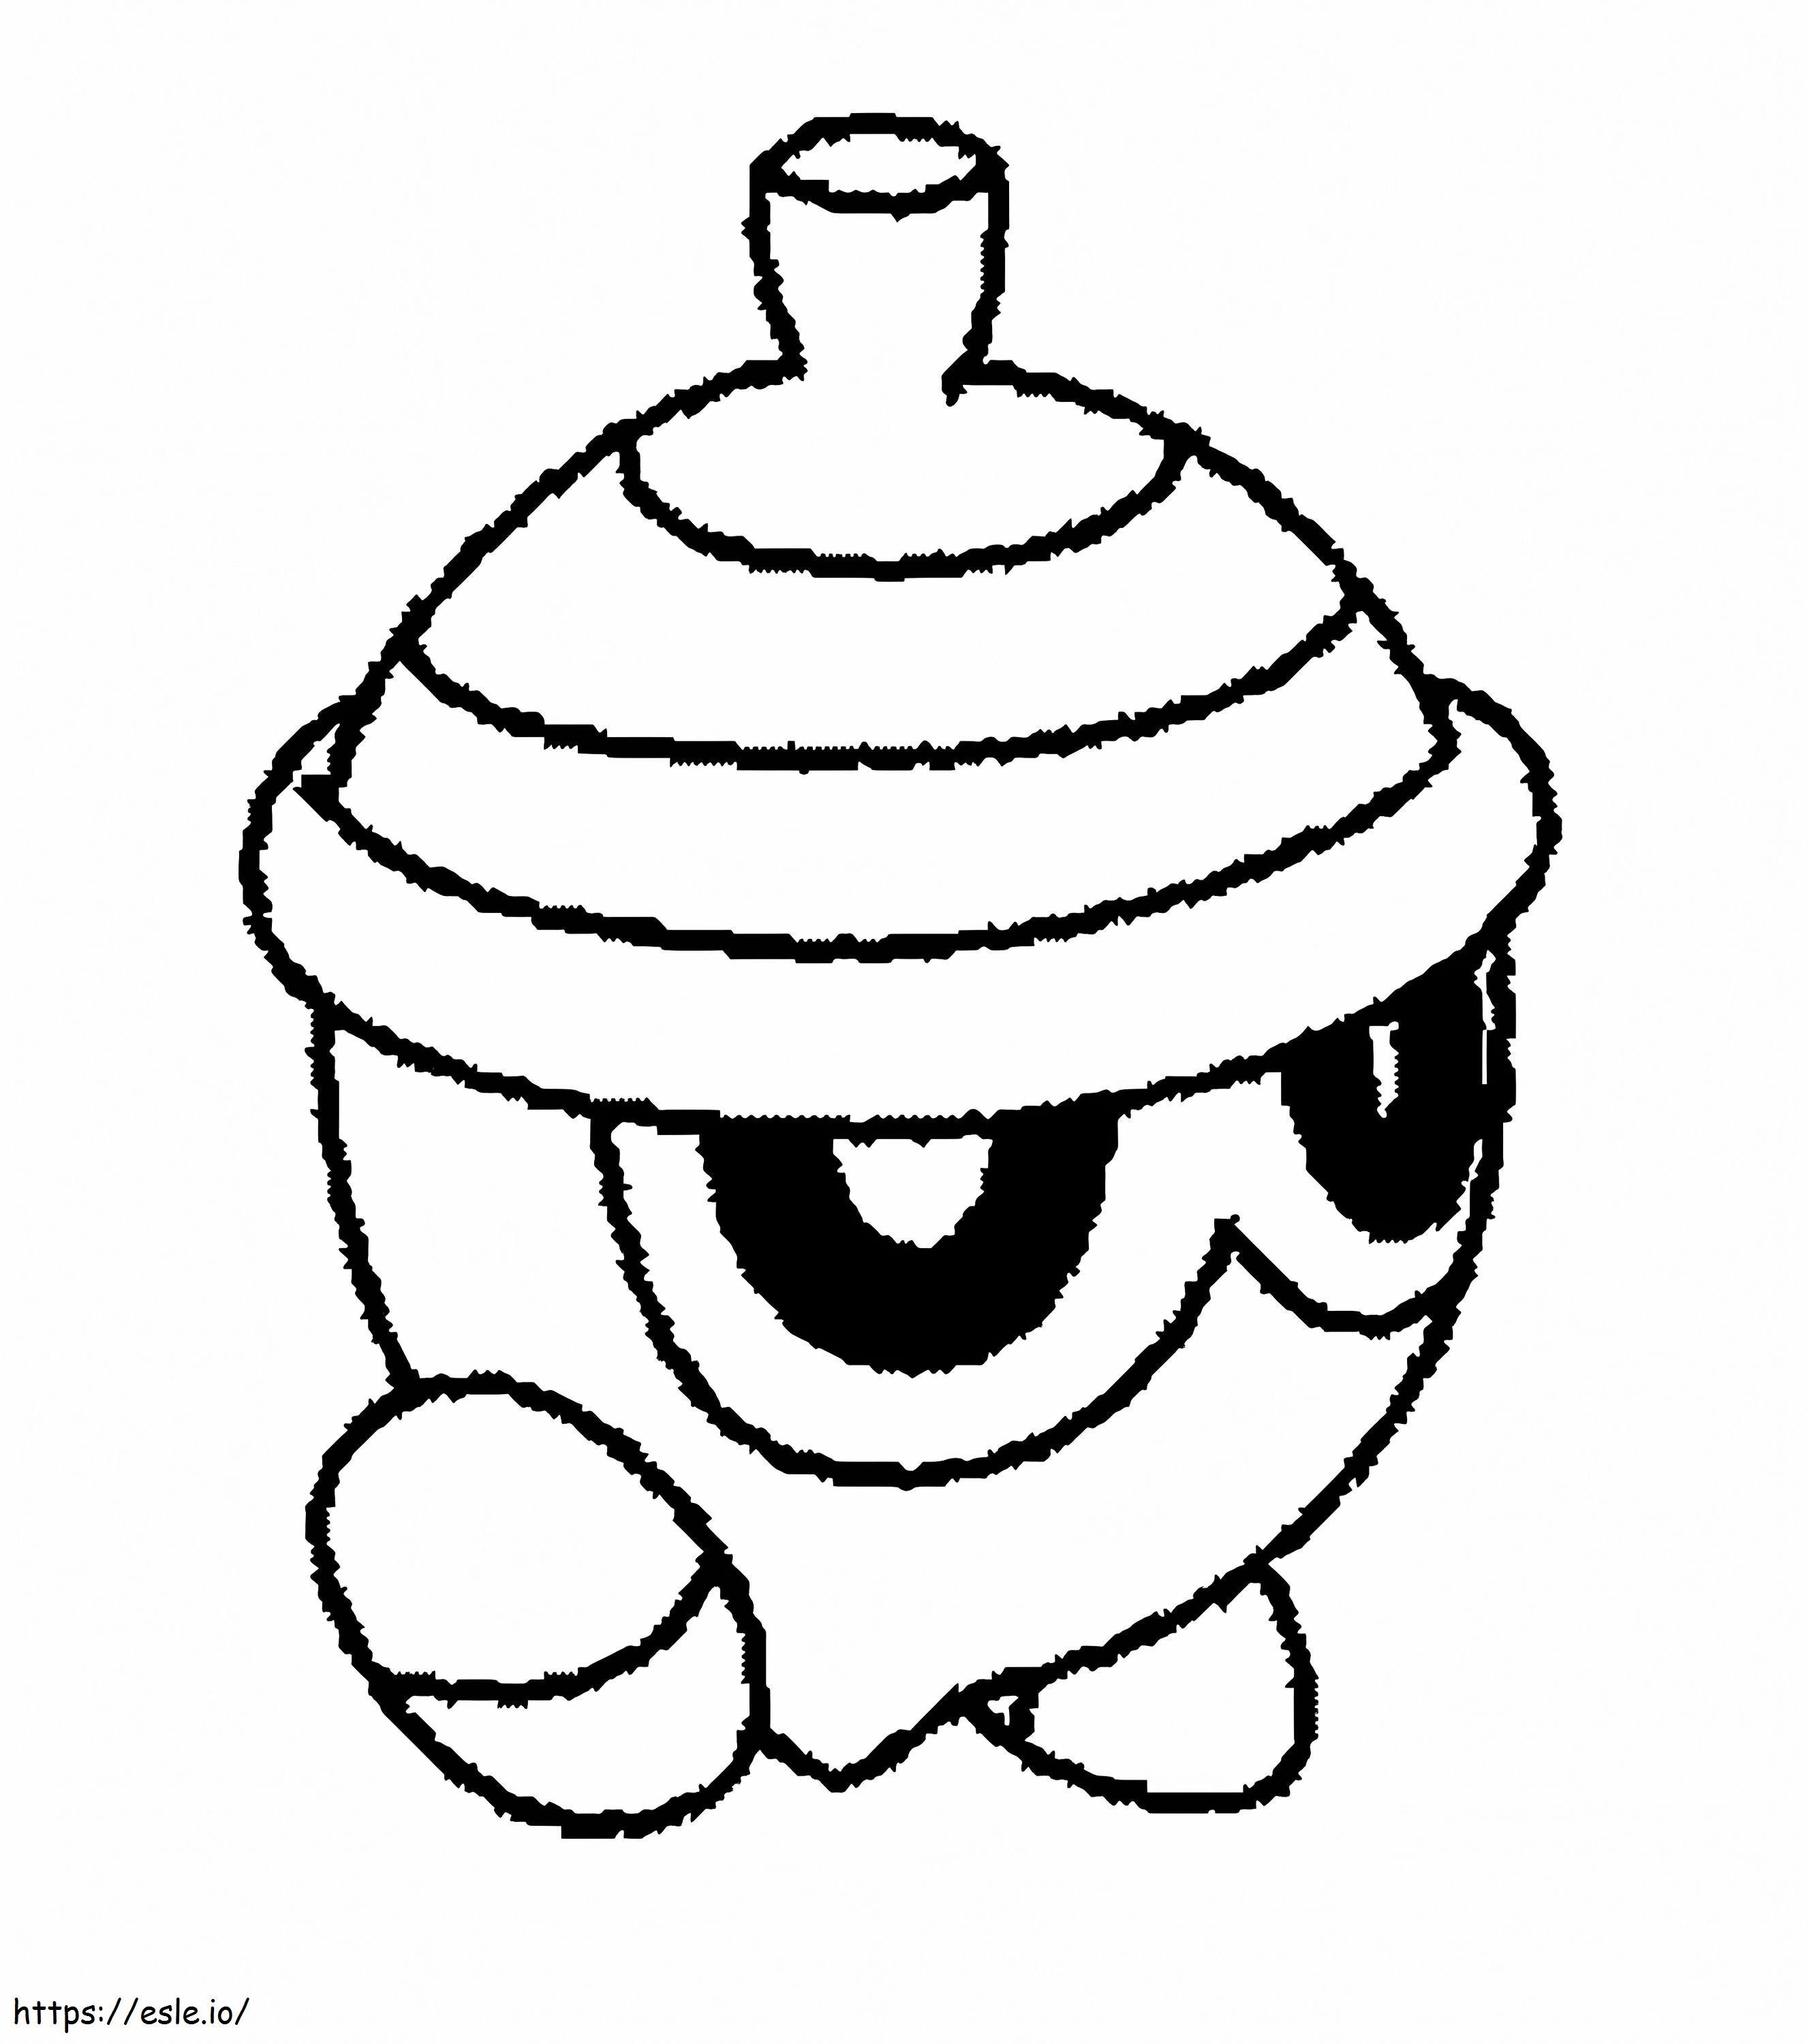 Seedot-Pokémon 3 ausmalbilder